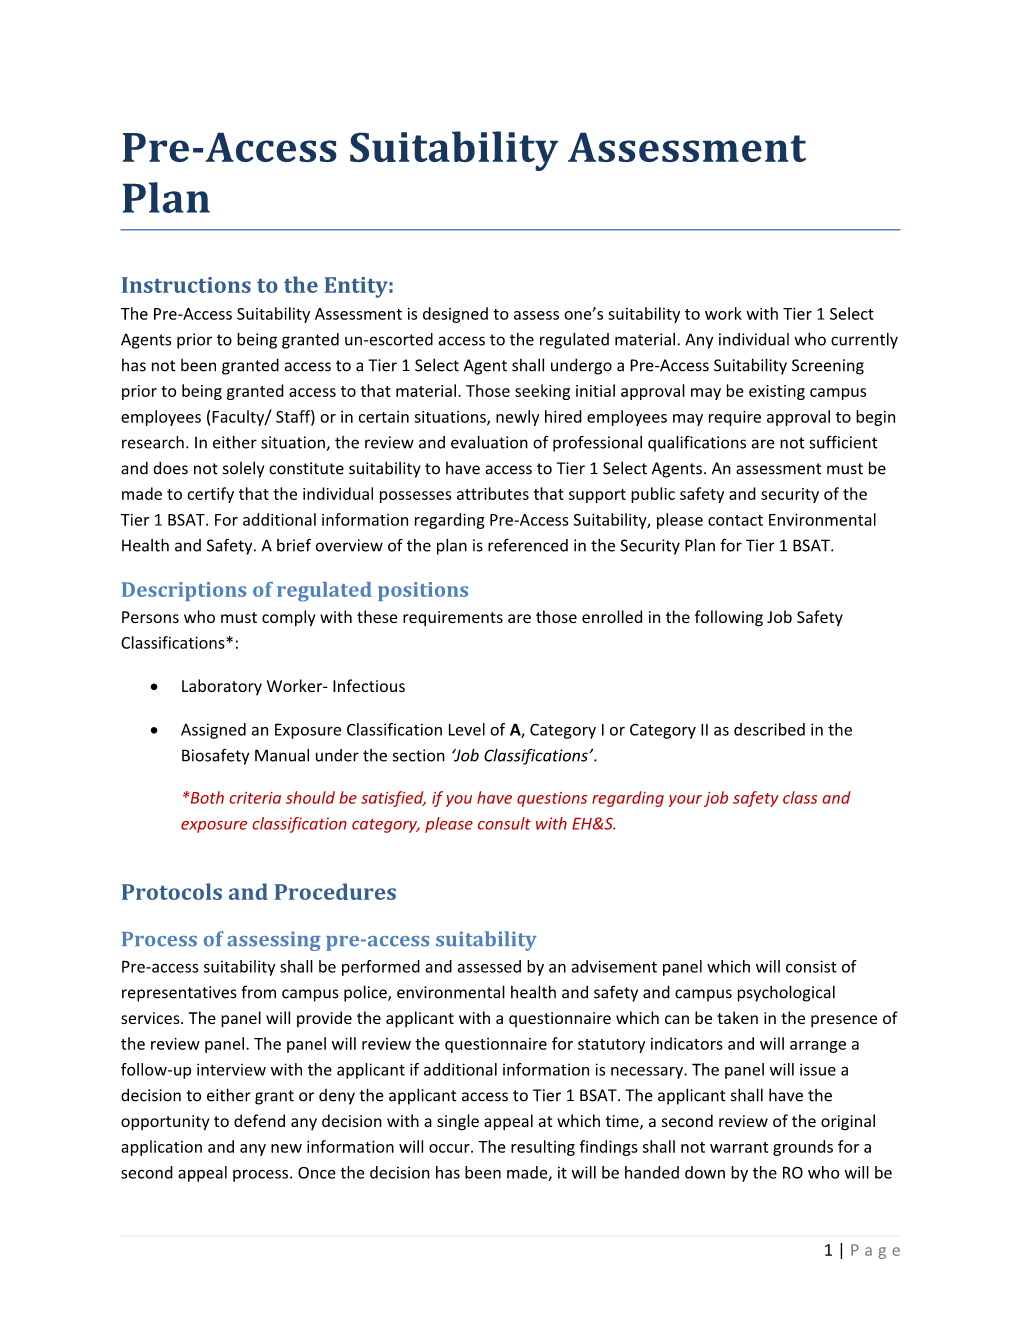 Pre-Access Suitabilityassessment Plan